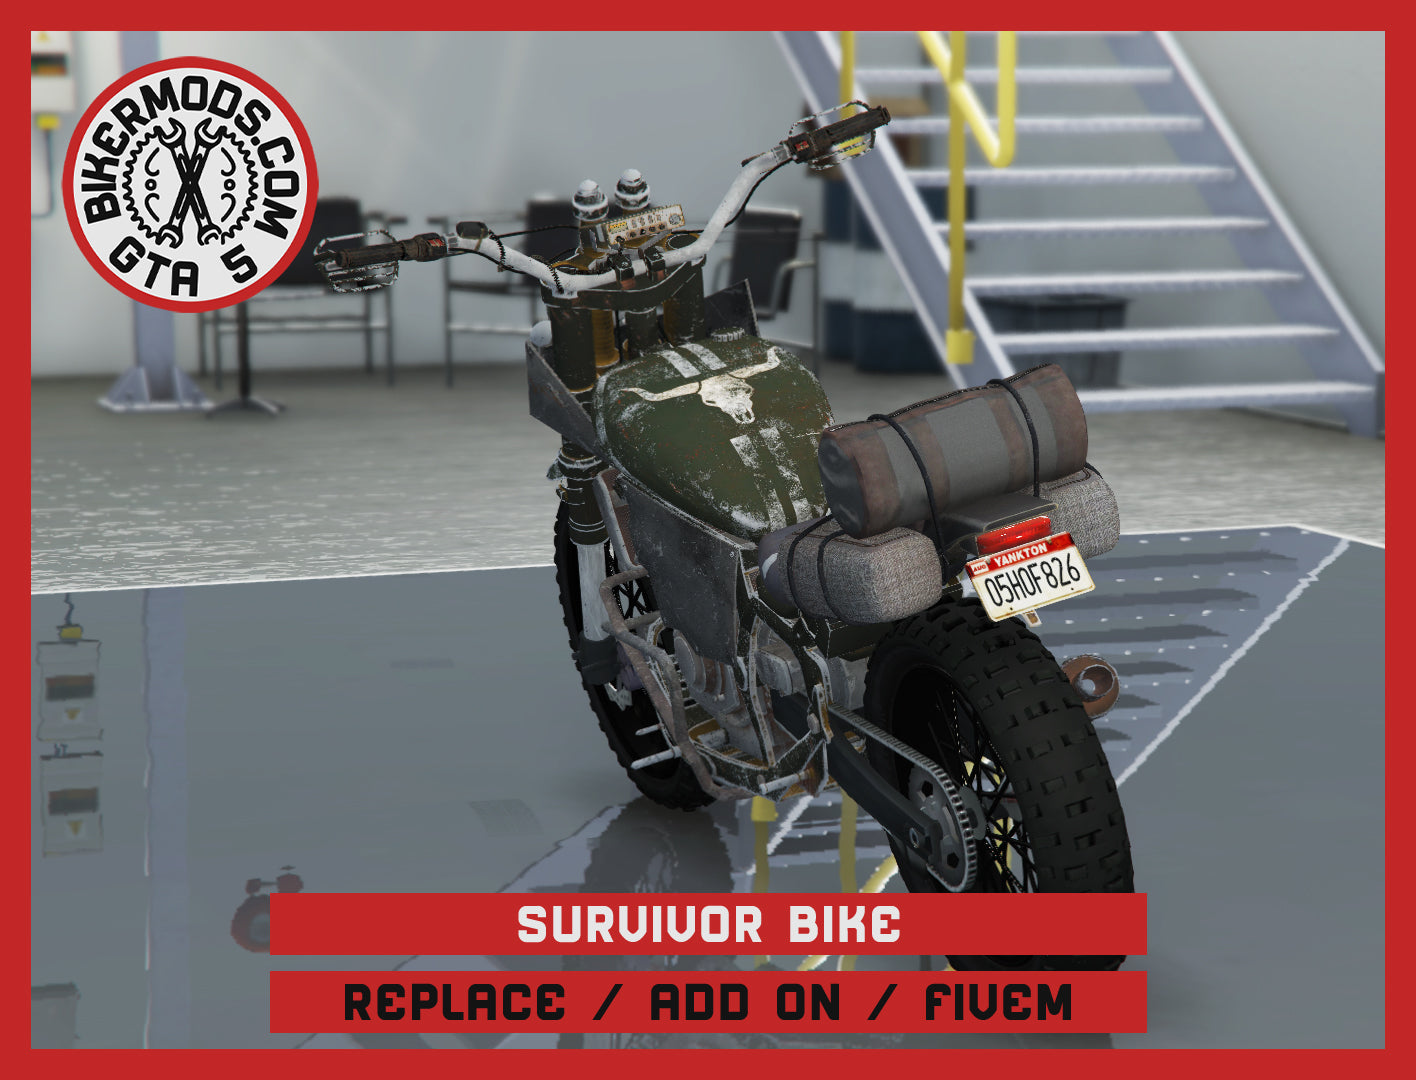 Survivor Bike (Replace / Add On / FiveM) 111k Poly ("Days Gone")